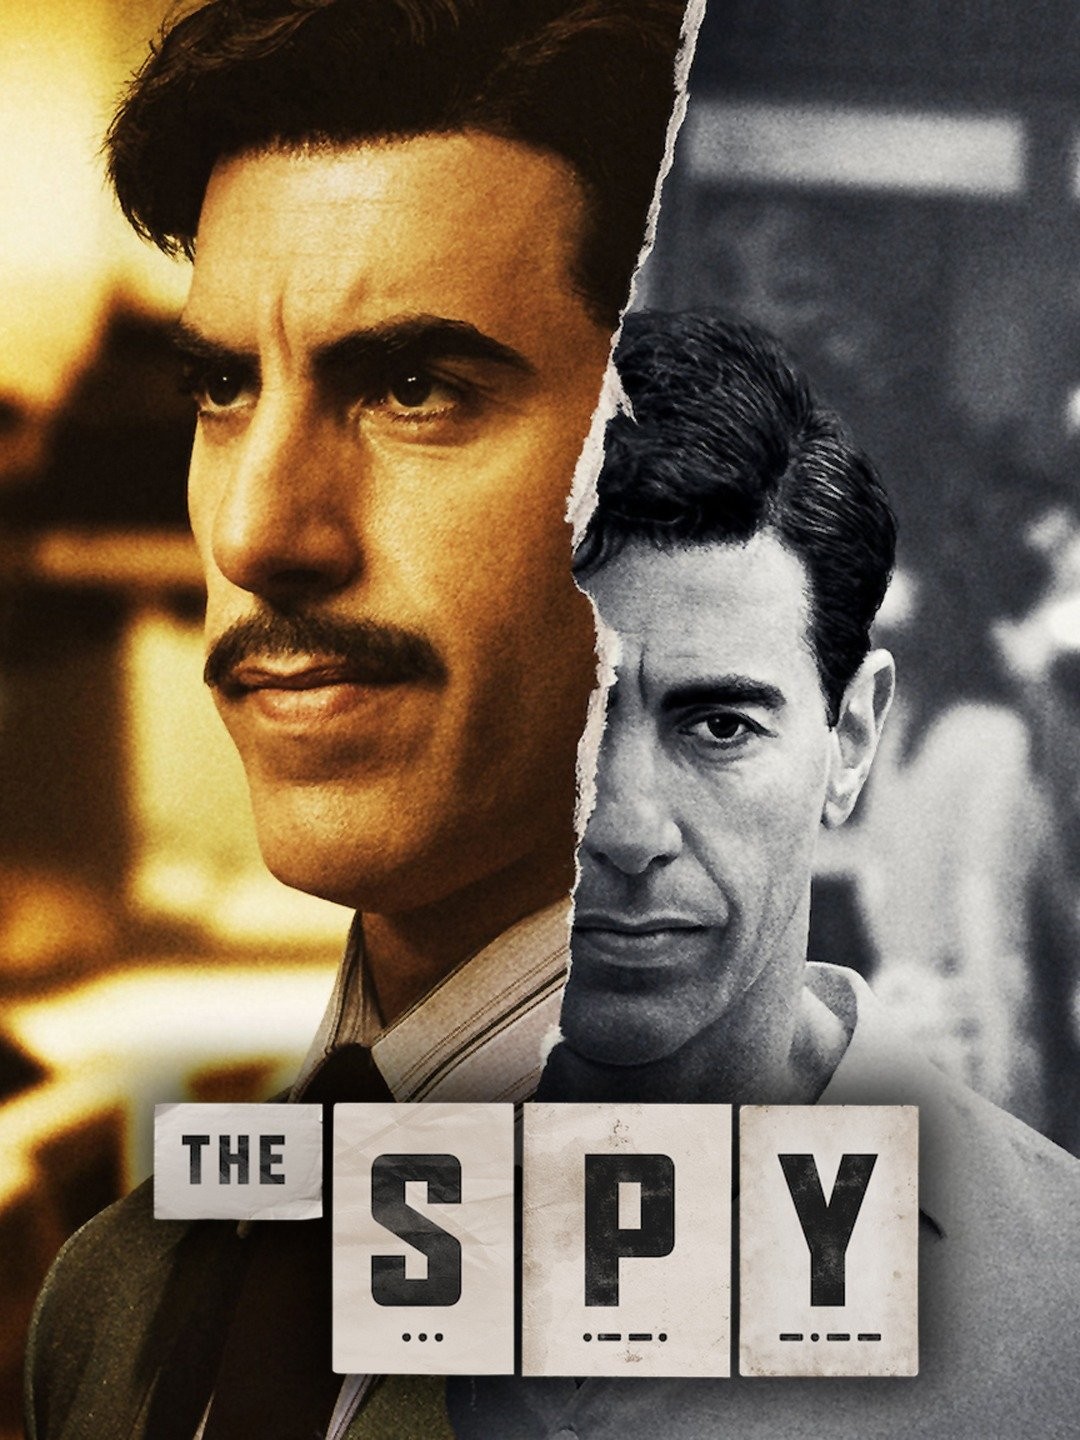 Spy/Master (2023) - Filmaffinity